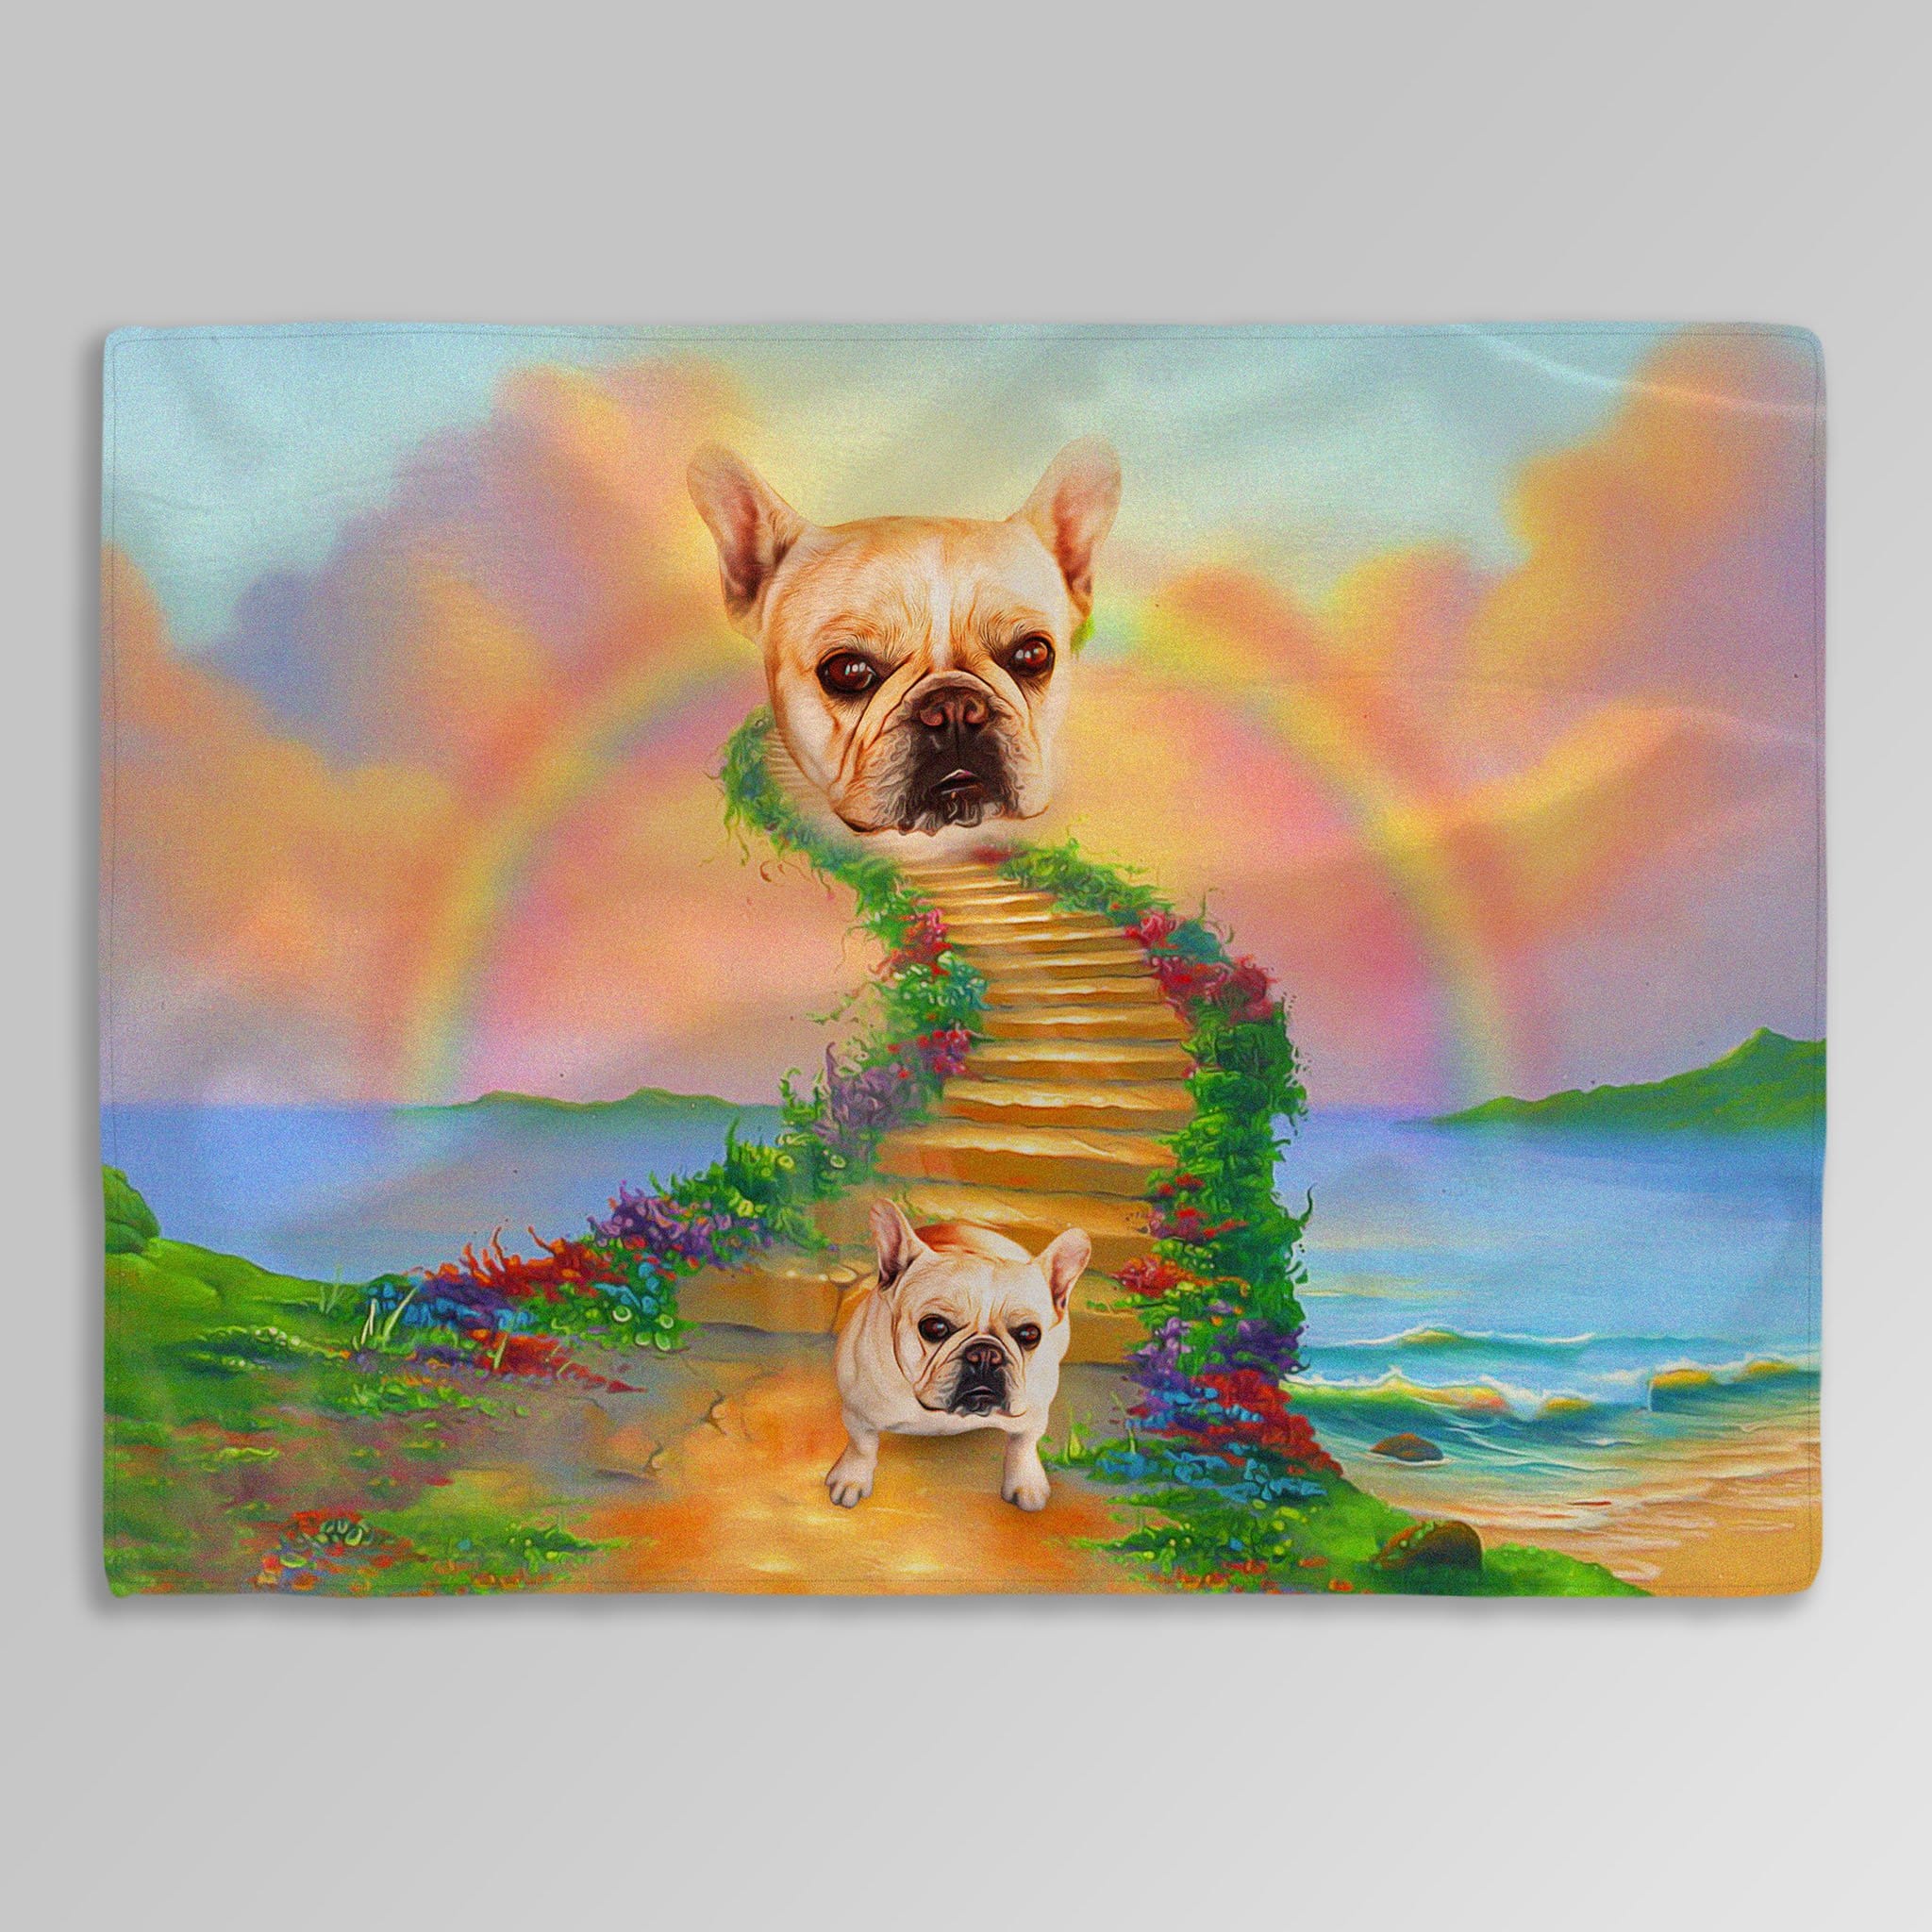 &#39;The Rainbow Bridge&#39; Personalized Pet Blanket